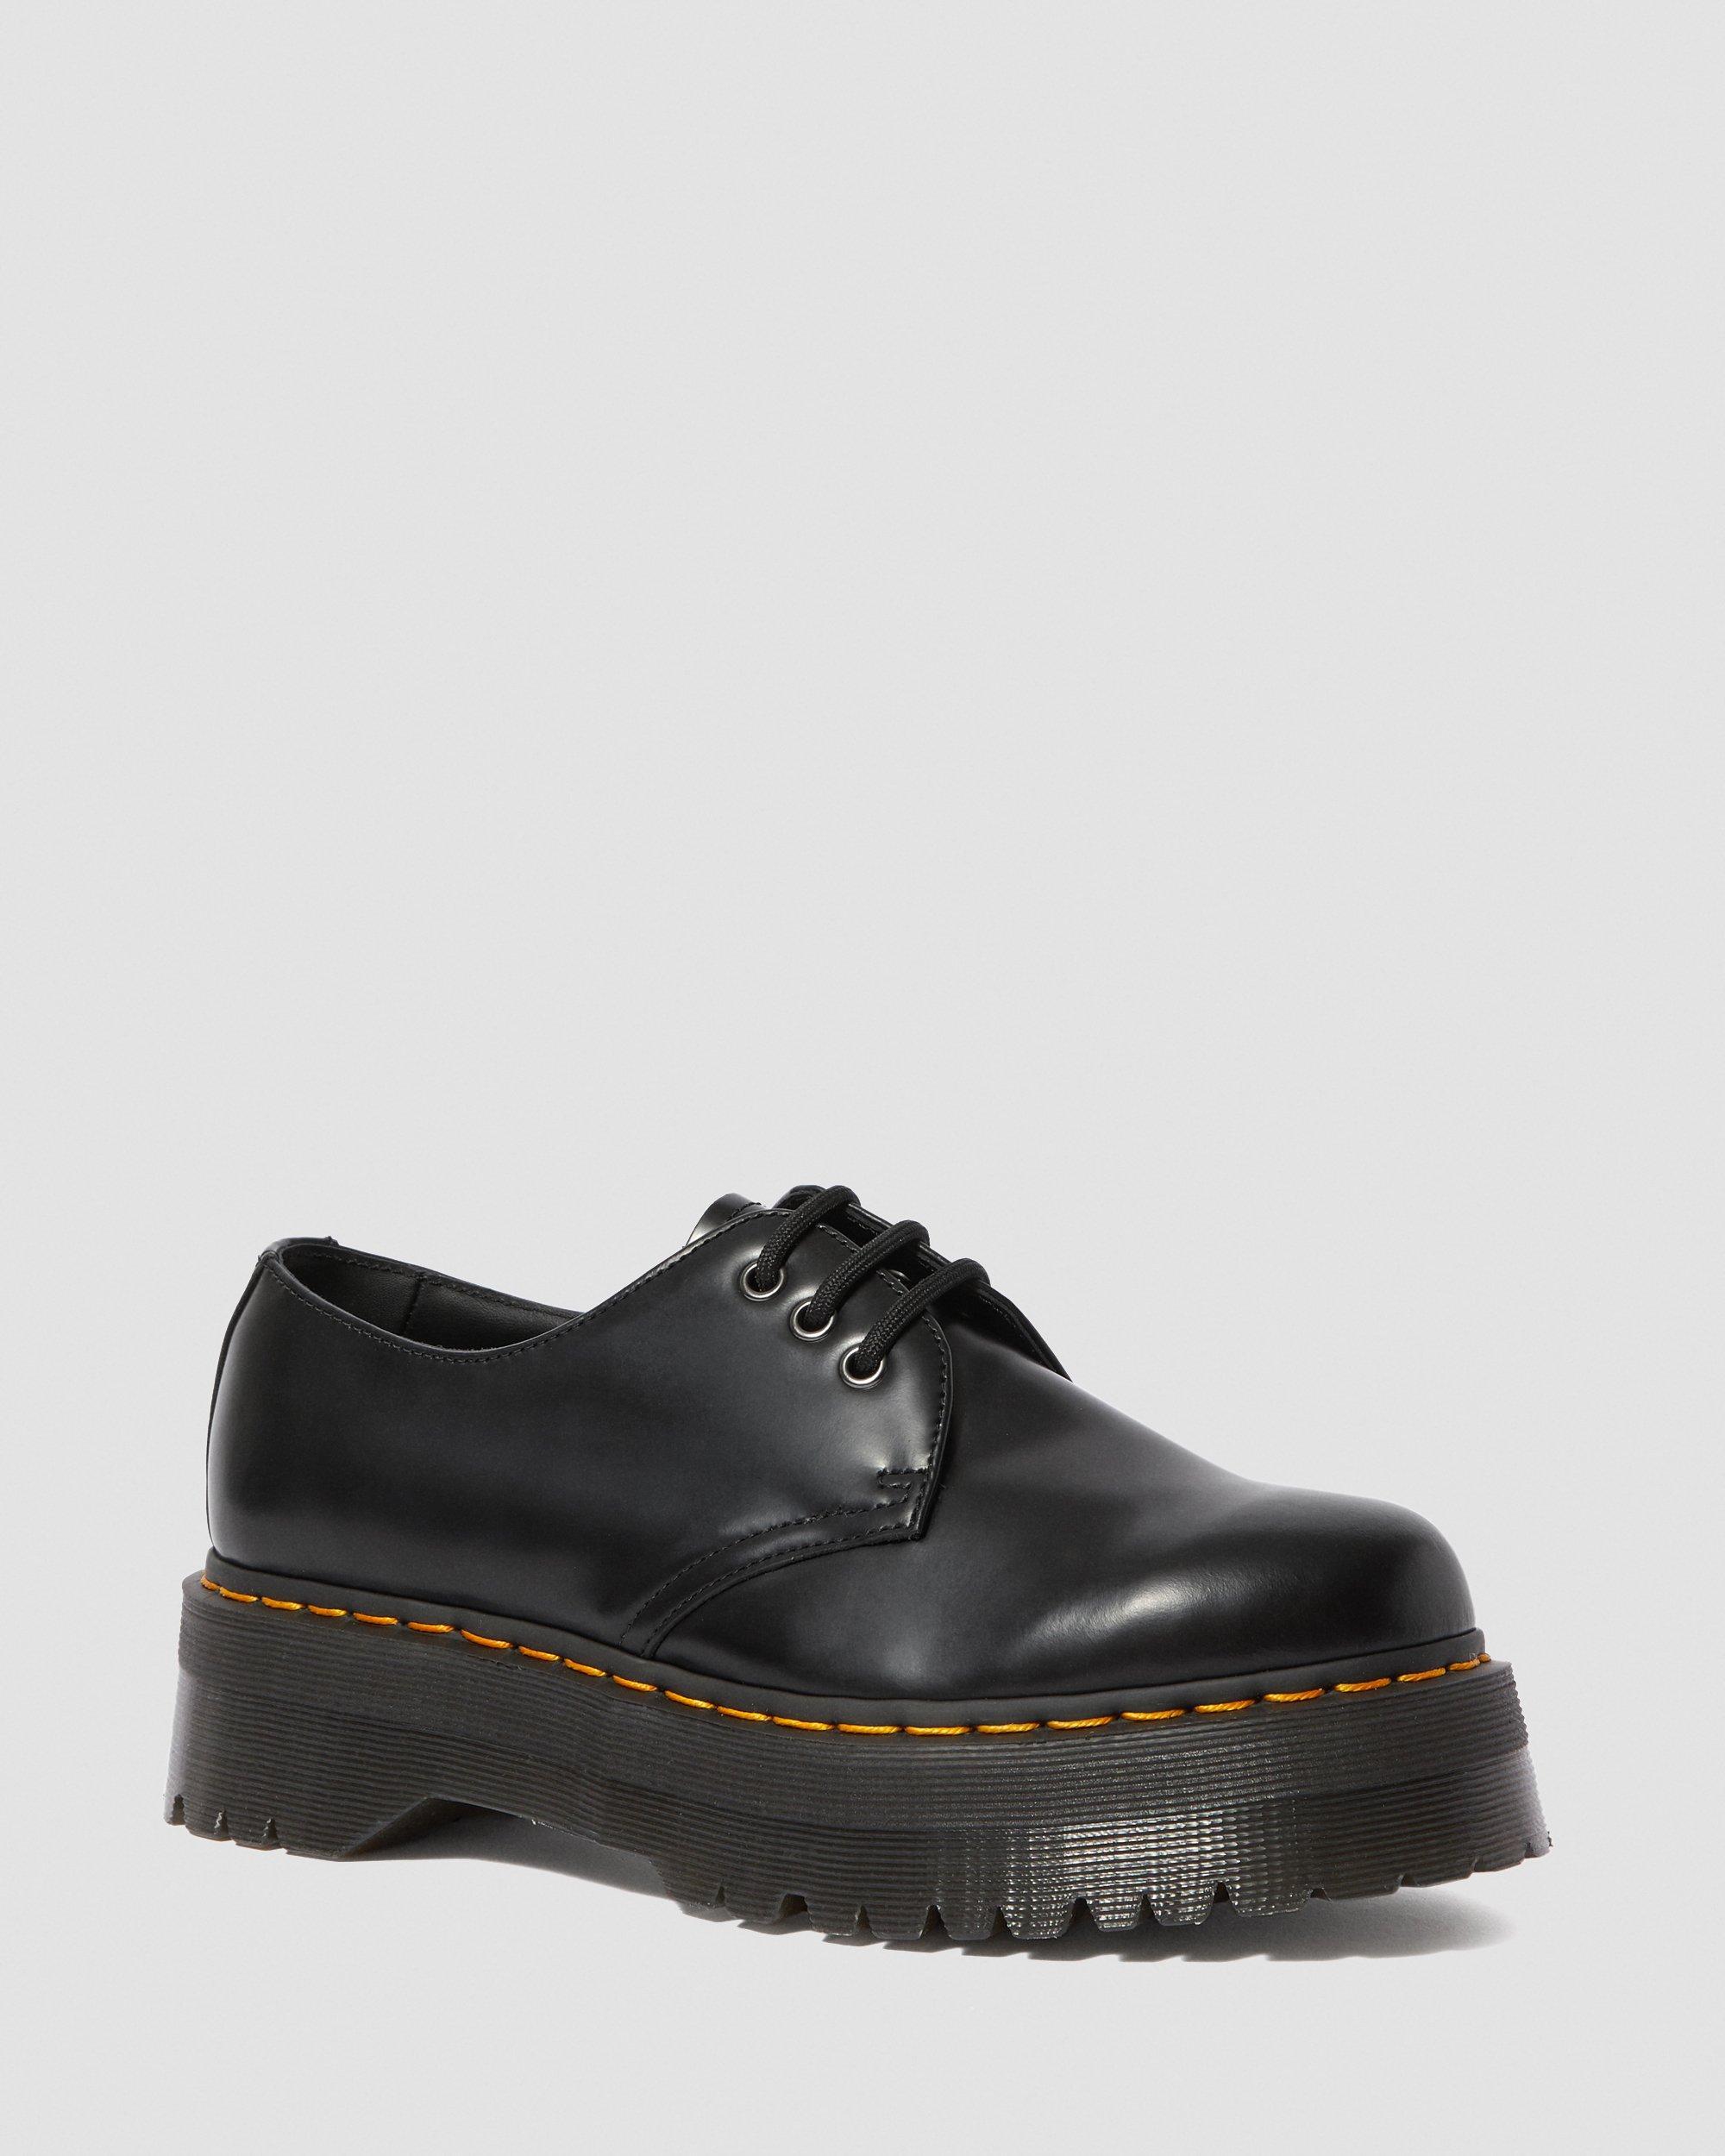 Dr. Martens 1461 Smooth Leather Platform Shoes in Black for Men - Lyst